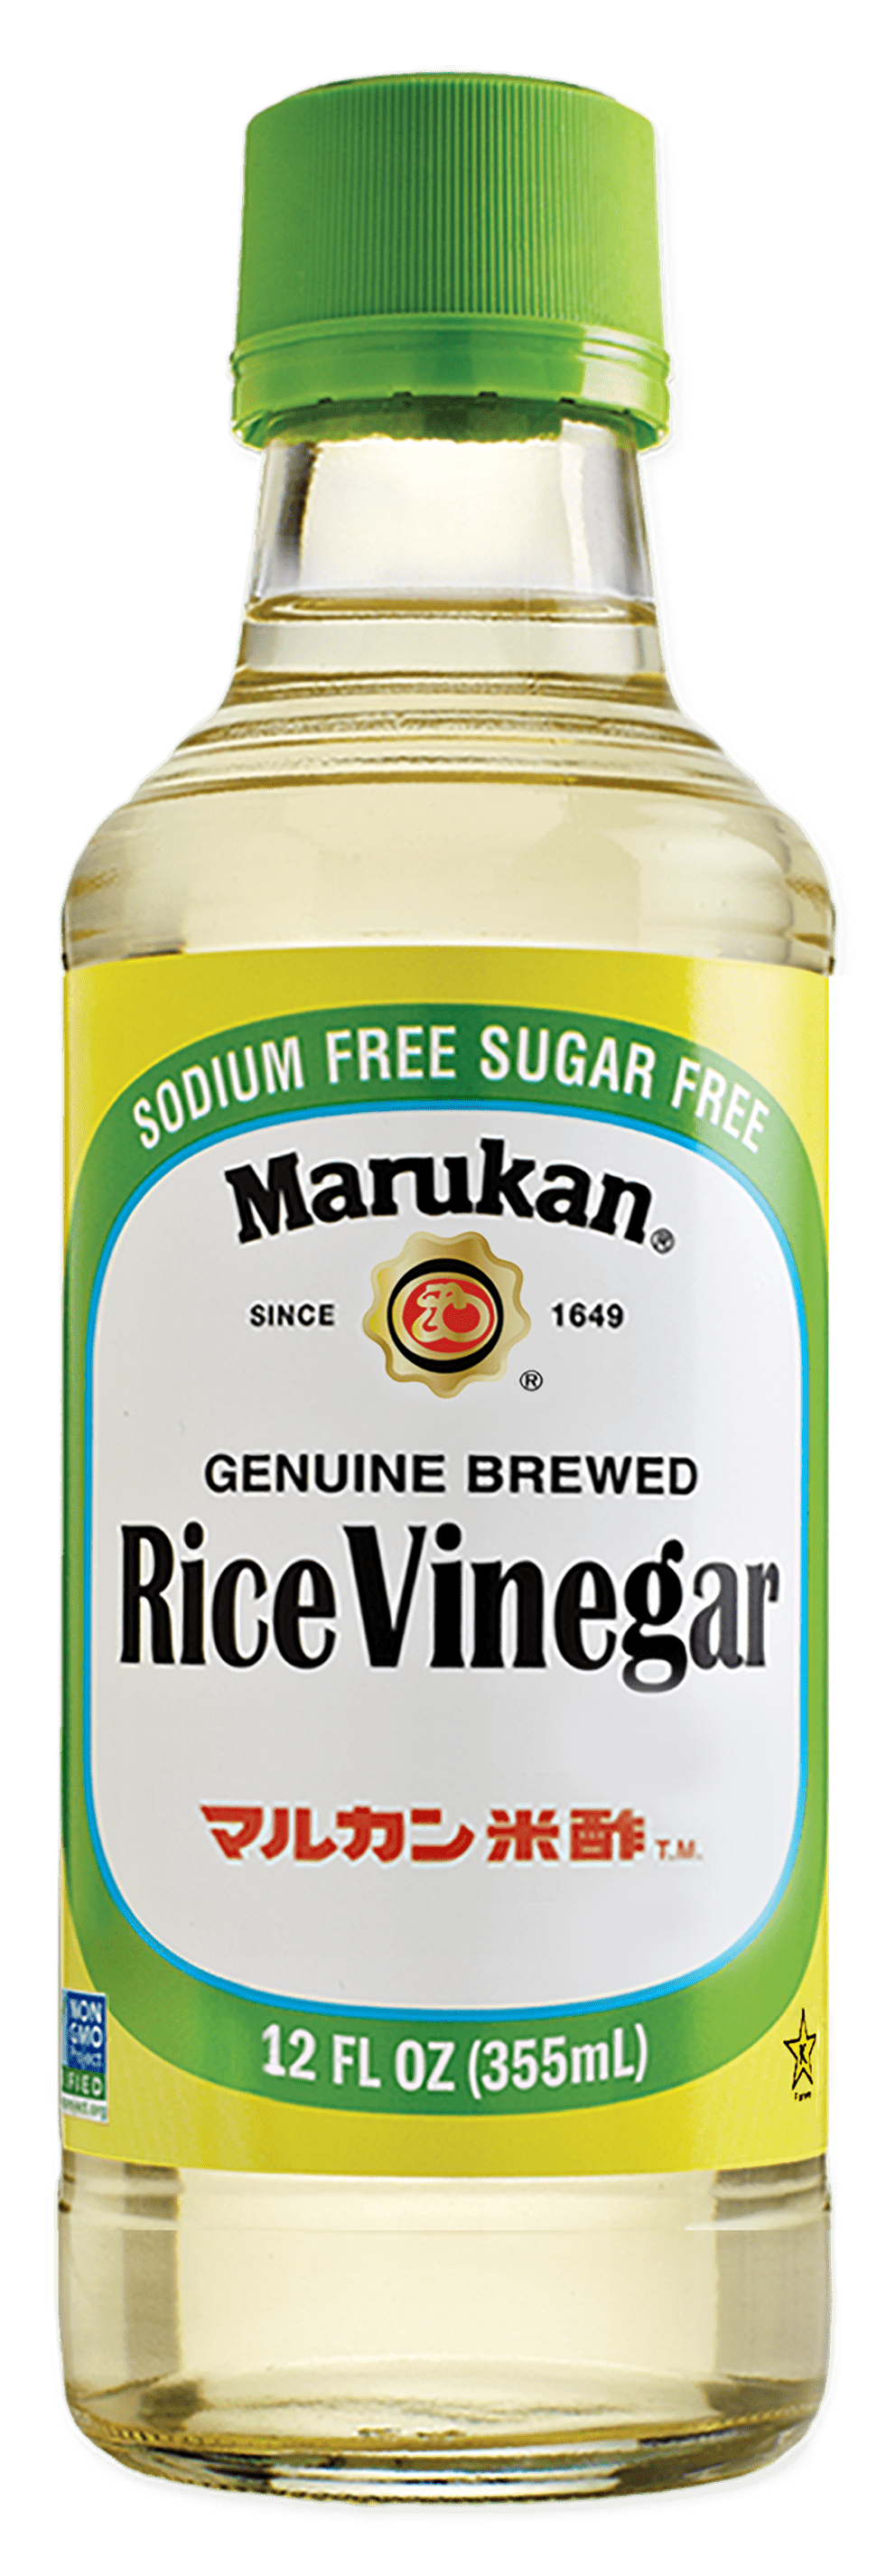 Authentic rice vinegar 355ml